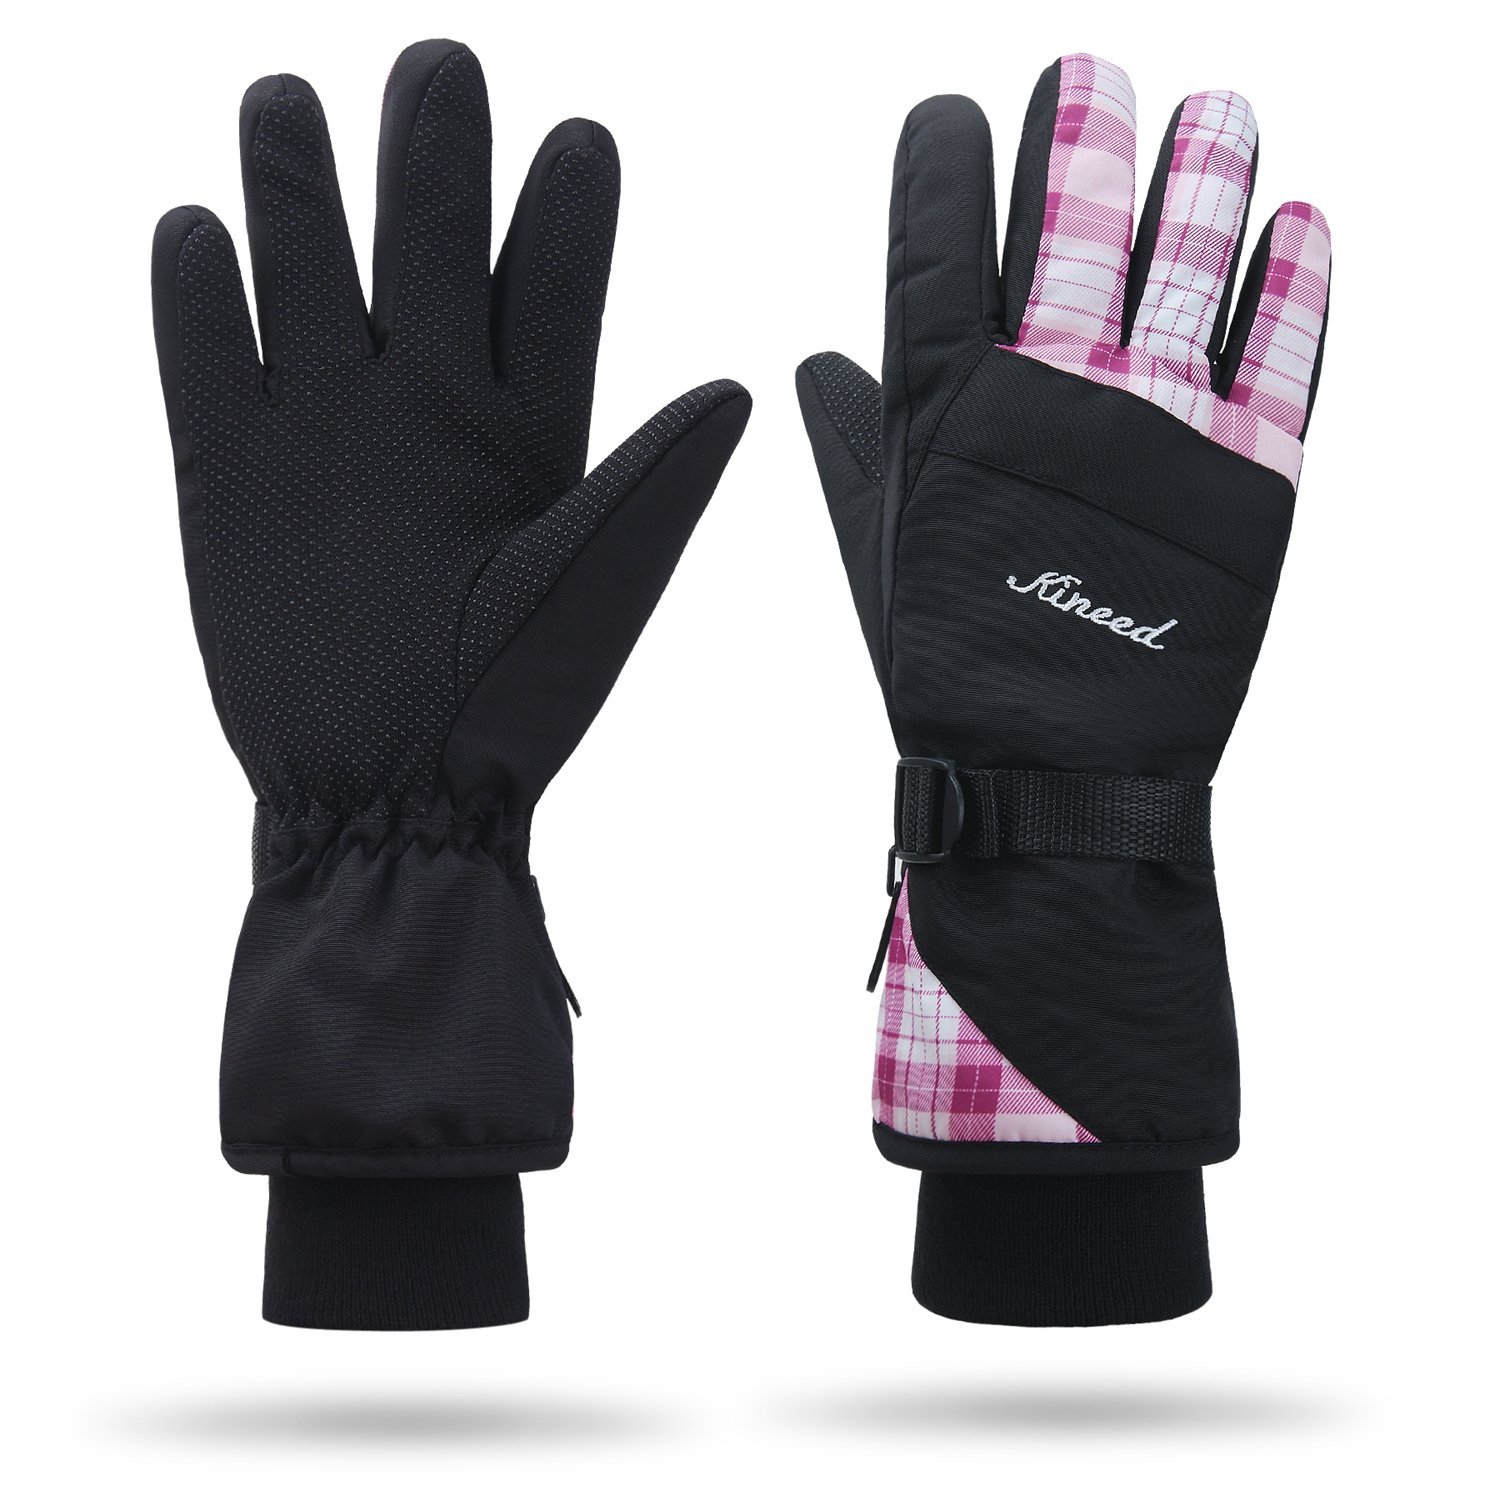 waterroof fleece lined womens winter gloves